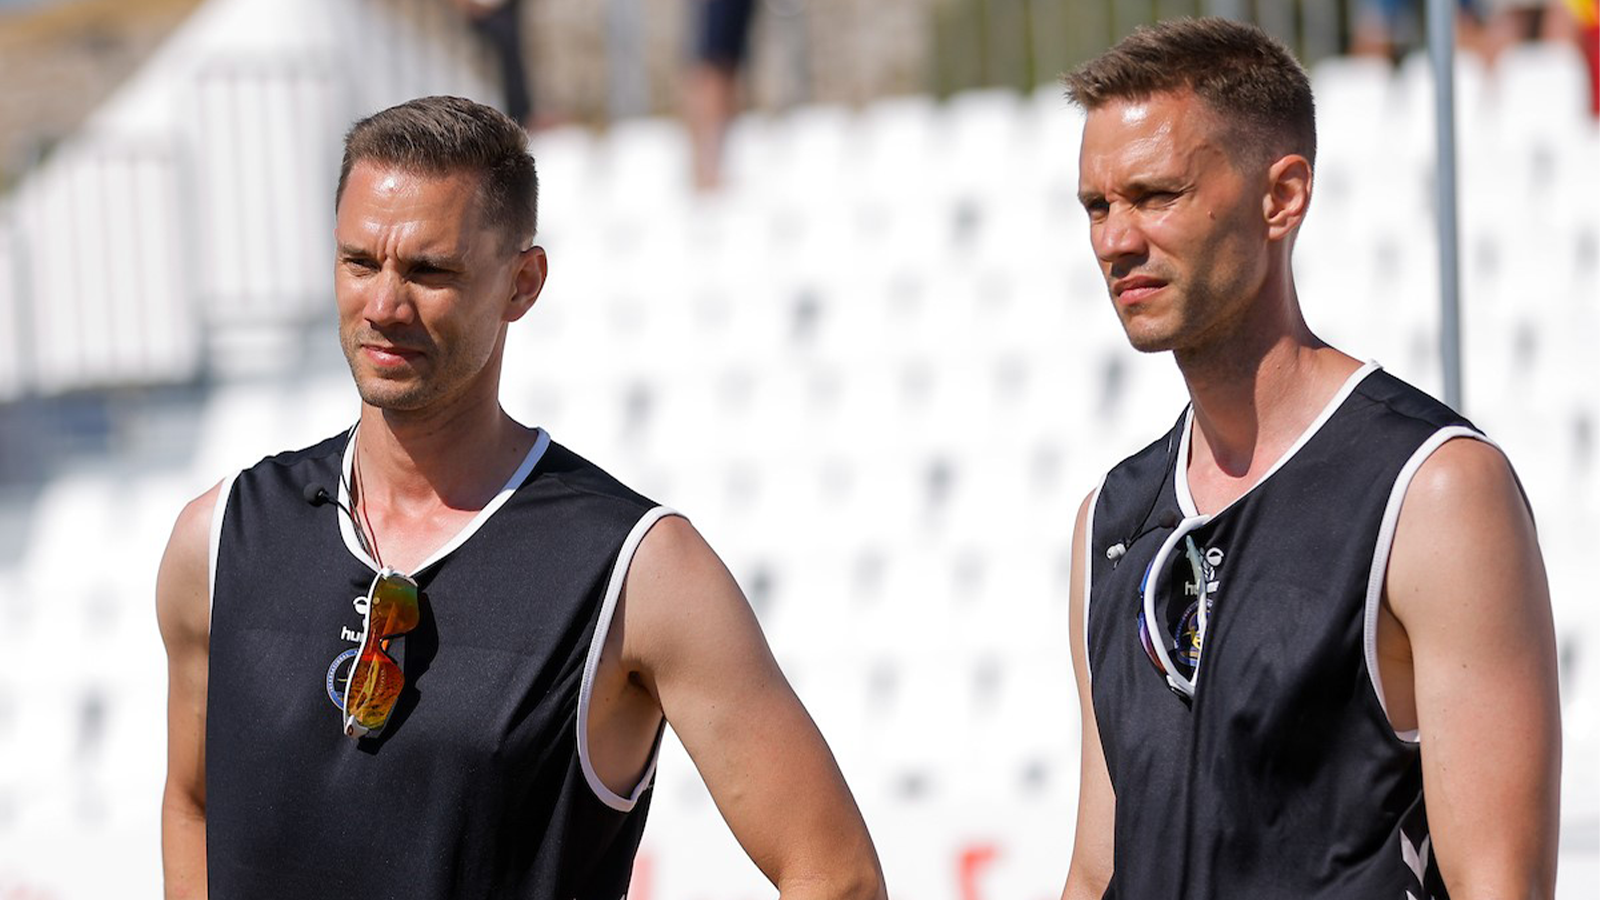 Johan och Martin Gomér är beachhandbollsdomare och dömer både i Sverige och utomlands